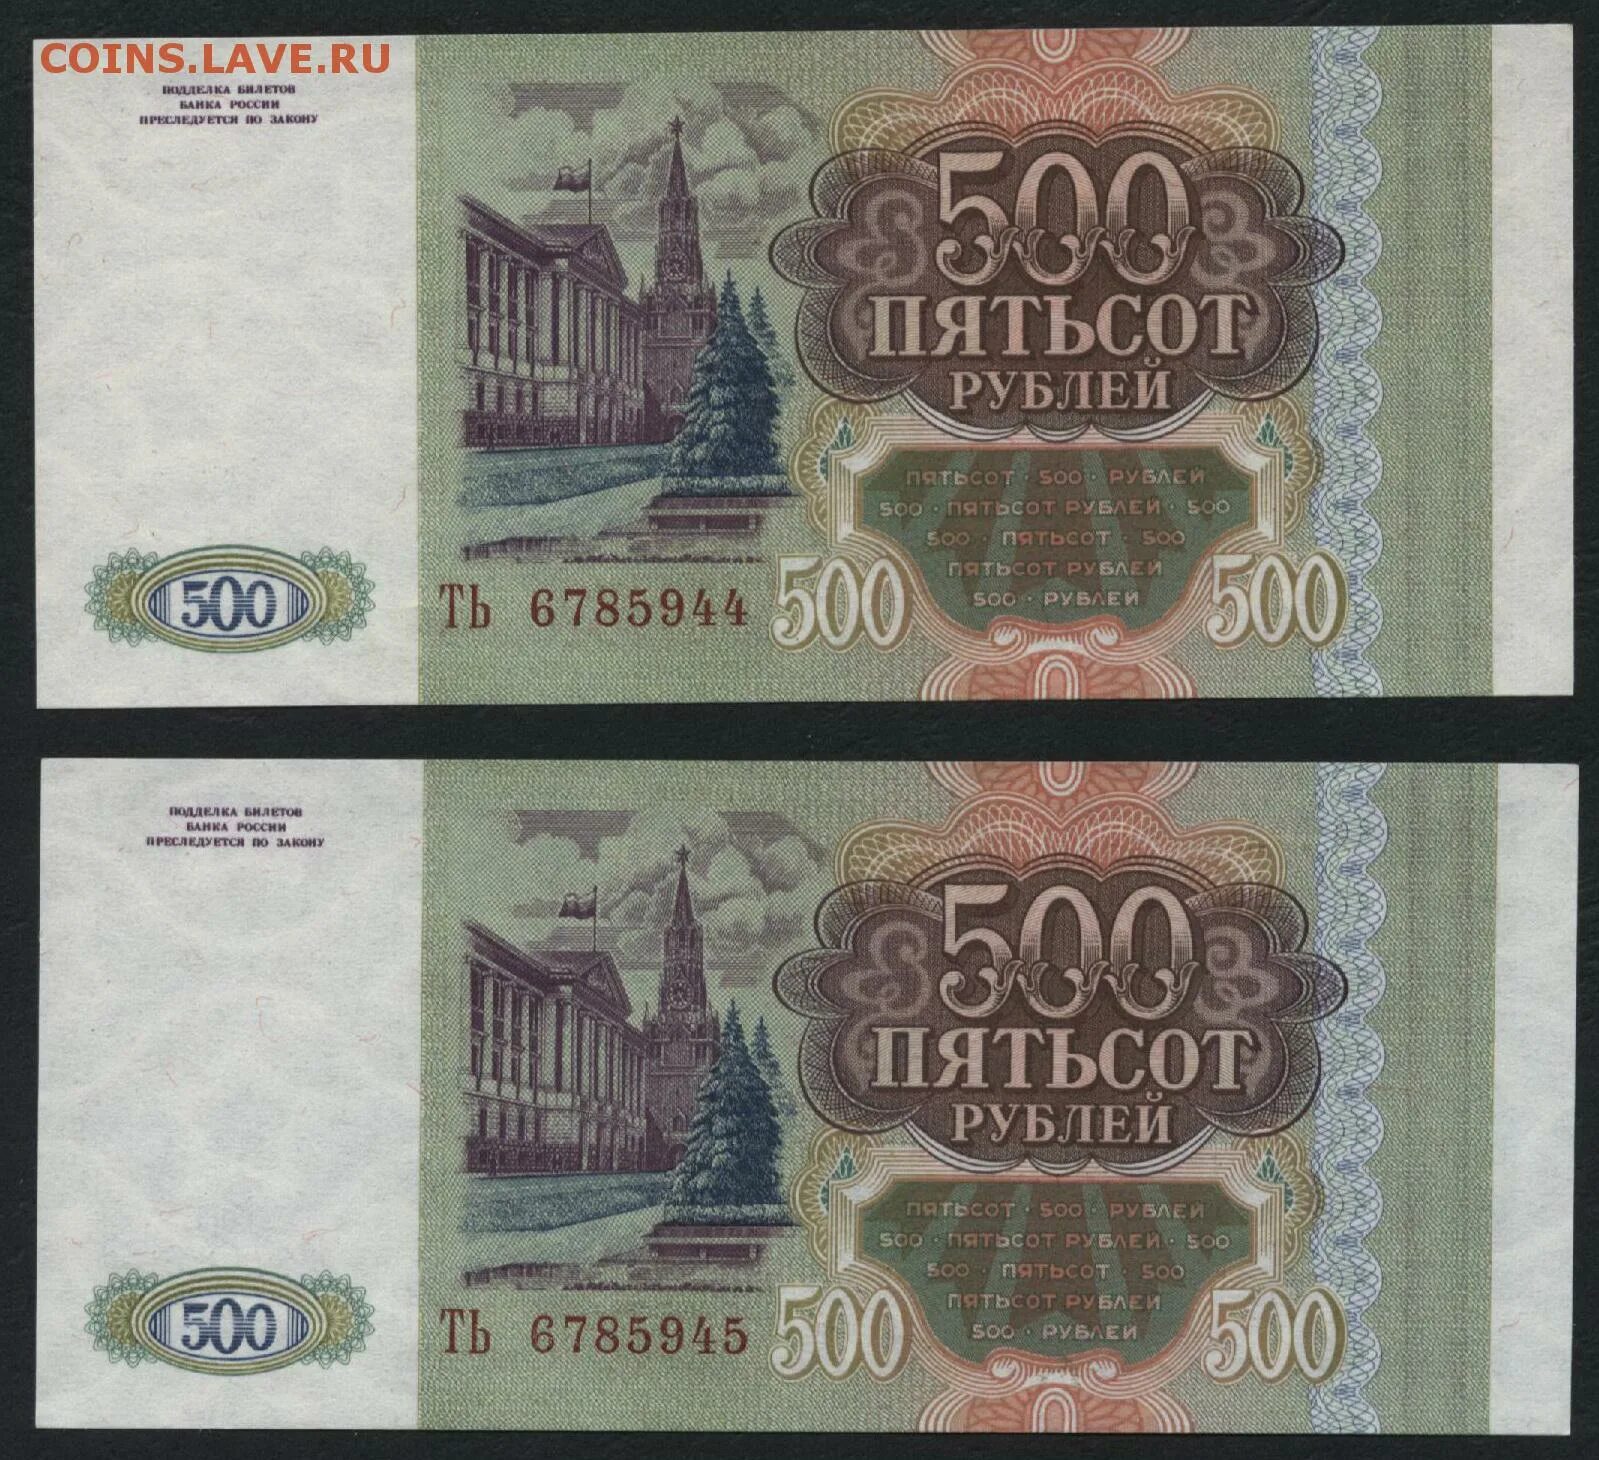 500 Рублей. 500 Рублей 1993. Пятьсот рублей 1993. 500 Рублей 1993 года.